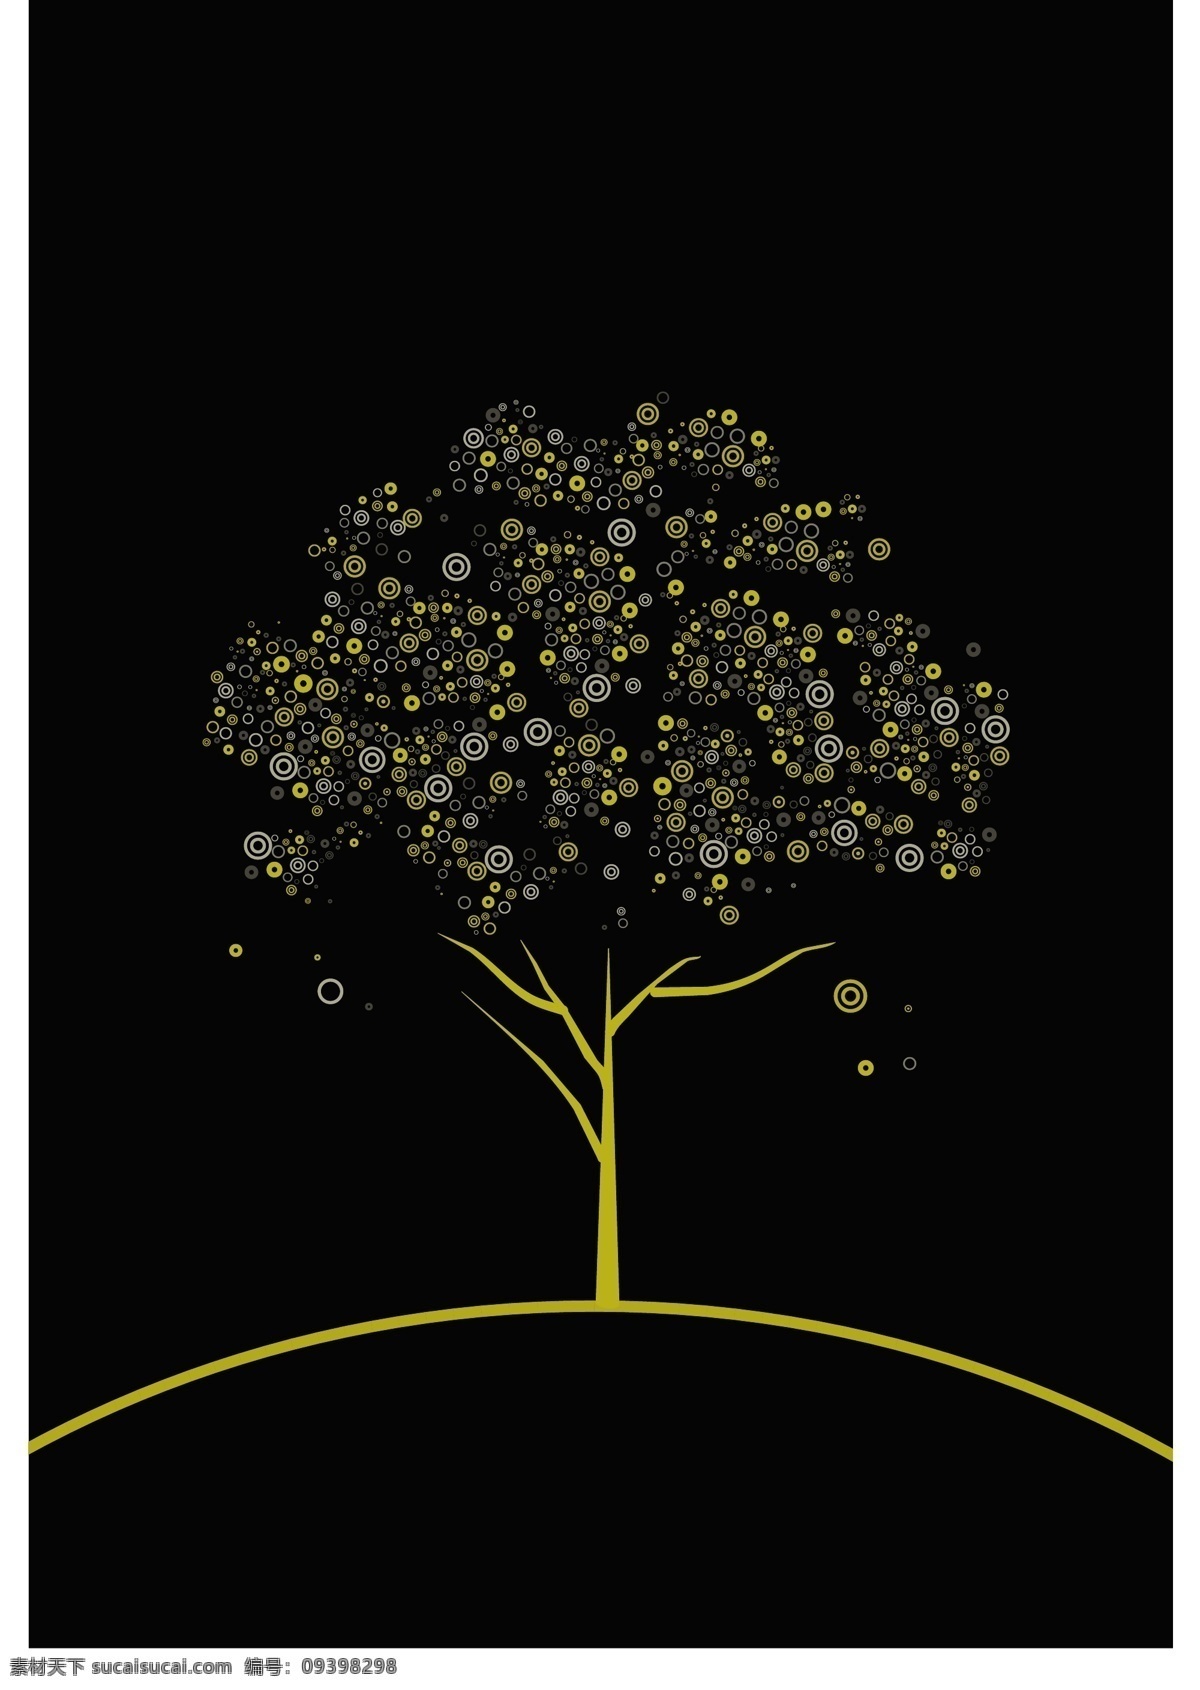 圆圈 装饰 树 矢量 彩色 创意 卡通 矢量图 树木 圆环 植物 其他矢量图